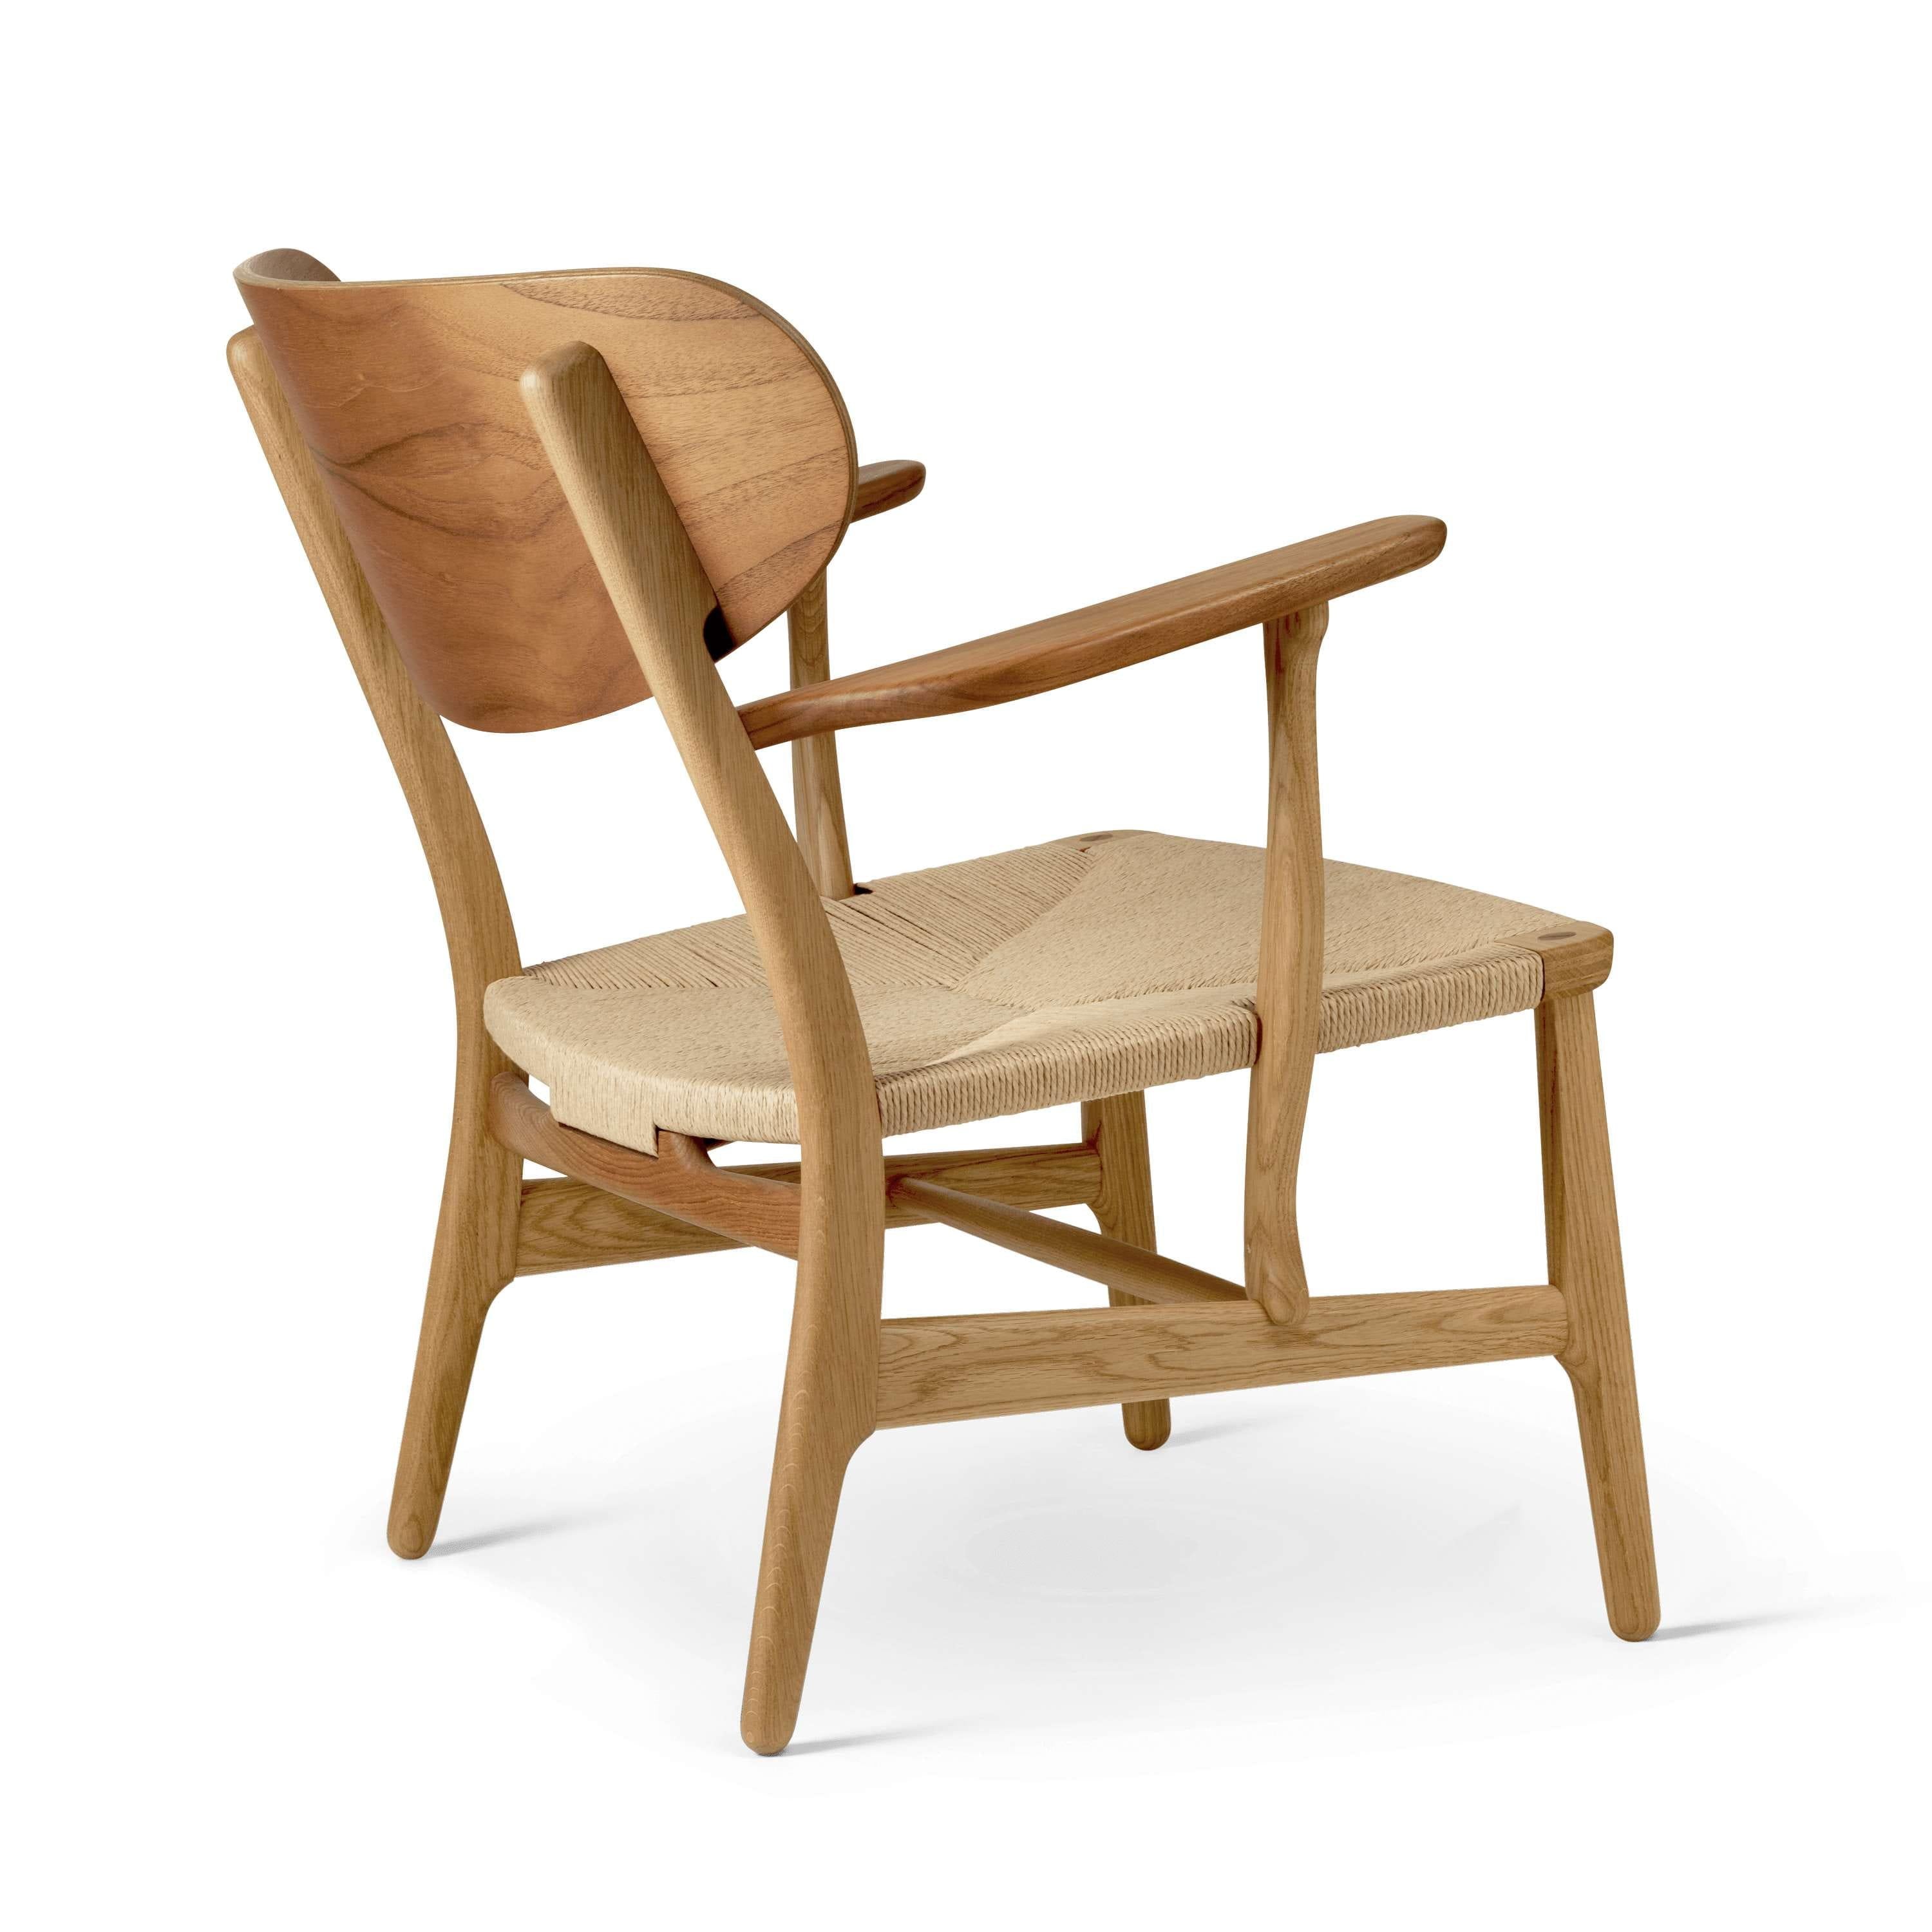 Carl Hansen CH22 Lounge stol teak/egolie, naturlig ledning